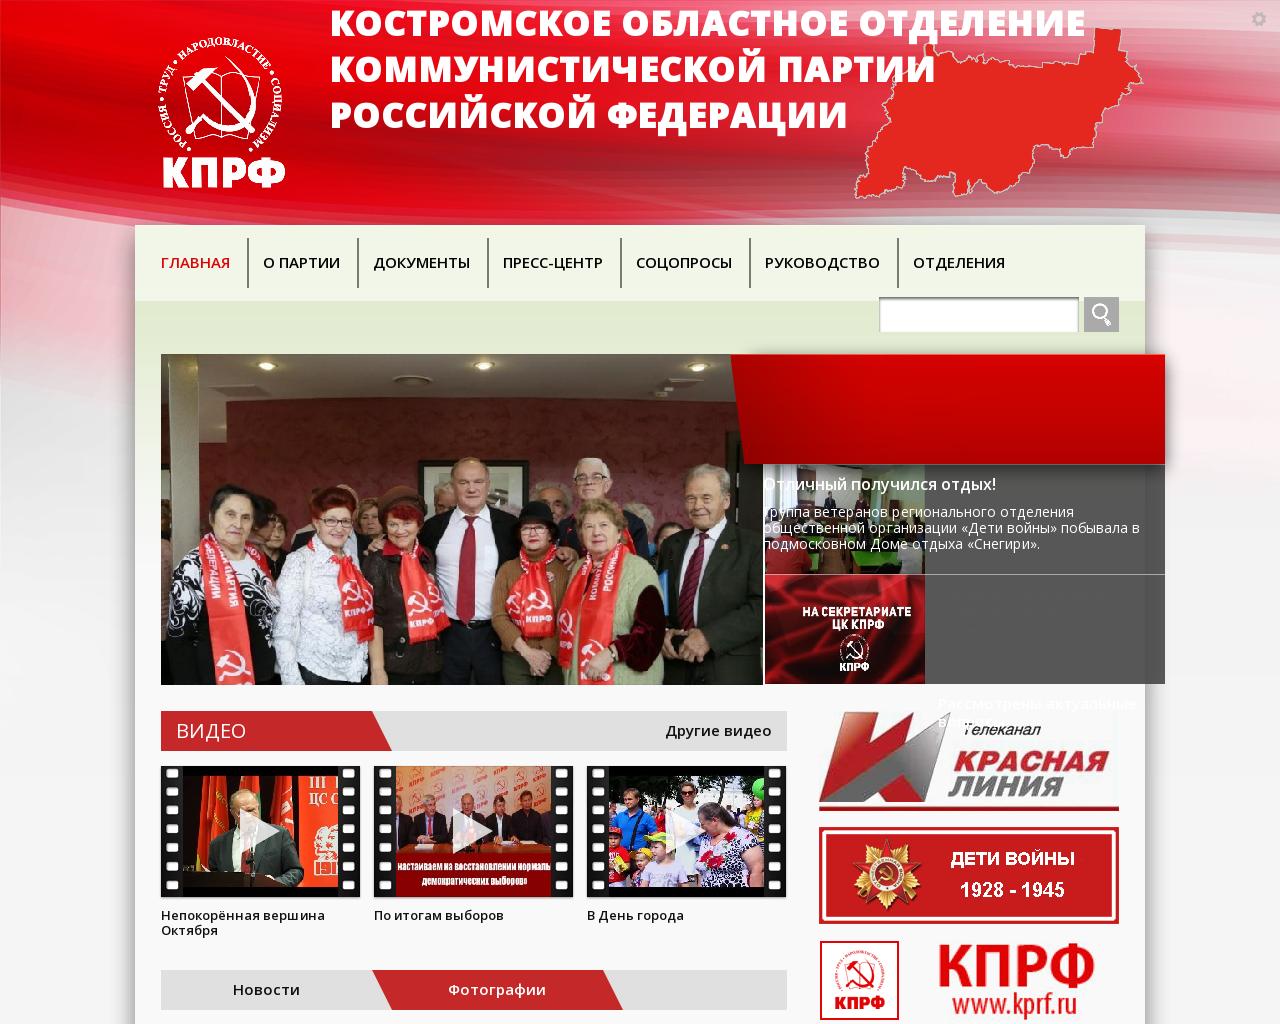 Изображение сайта zakprf44.ru в разрешении 1280x1024